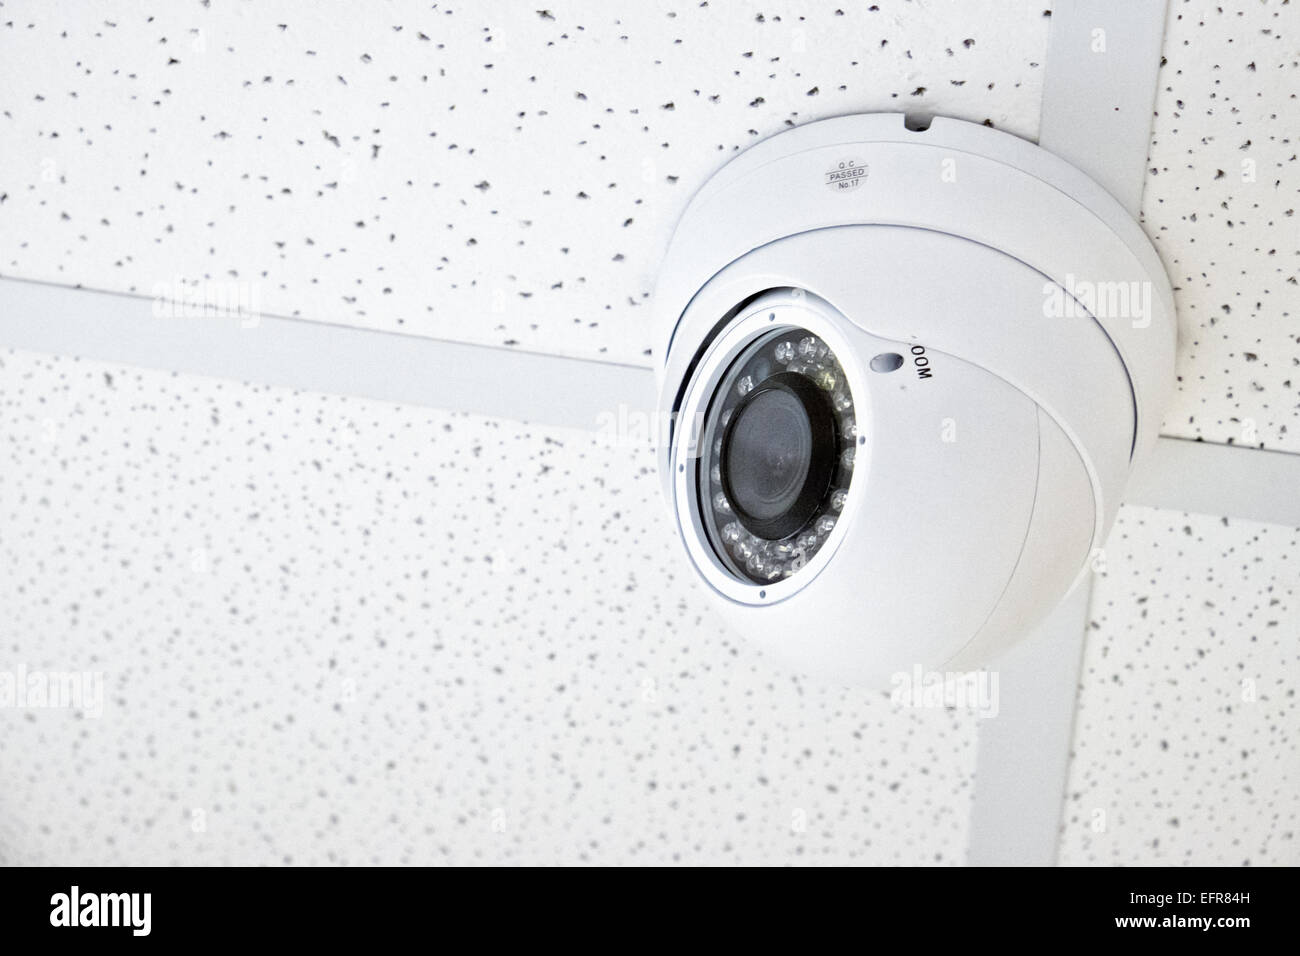 Une petite vision de nuit infrarouge capable de sécurité cctv caméra attachée à un plafond d'un magasin de vente au détail Banque D'Images